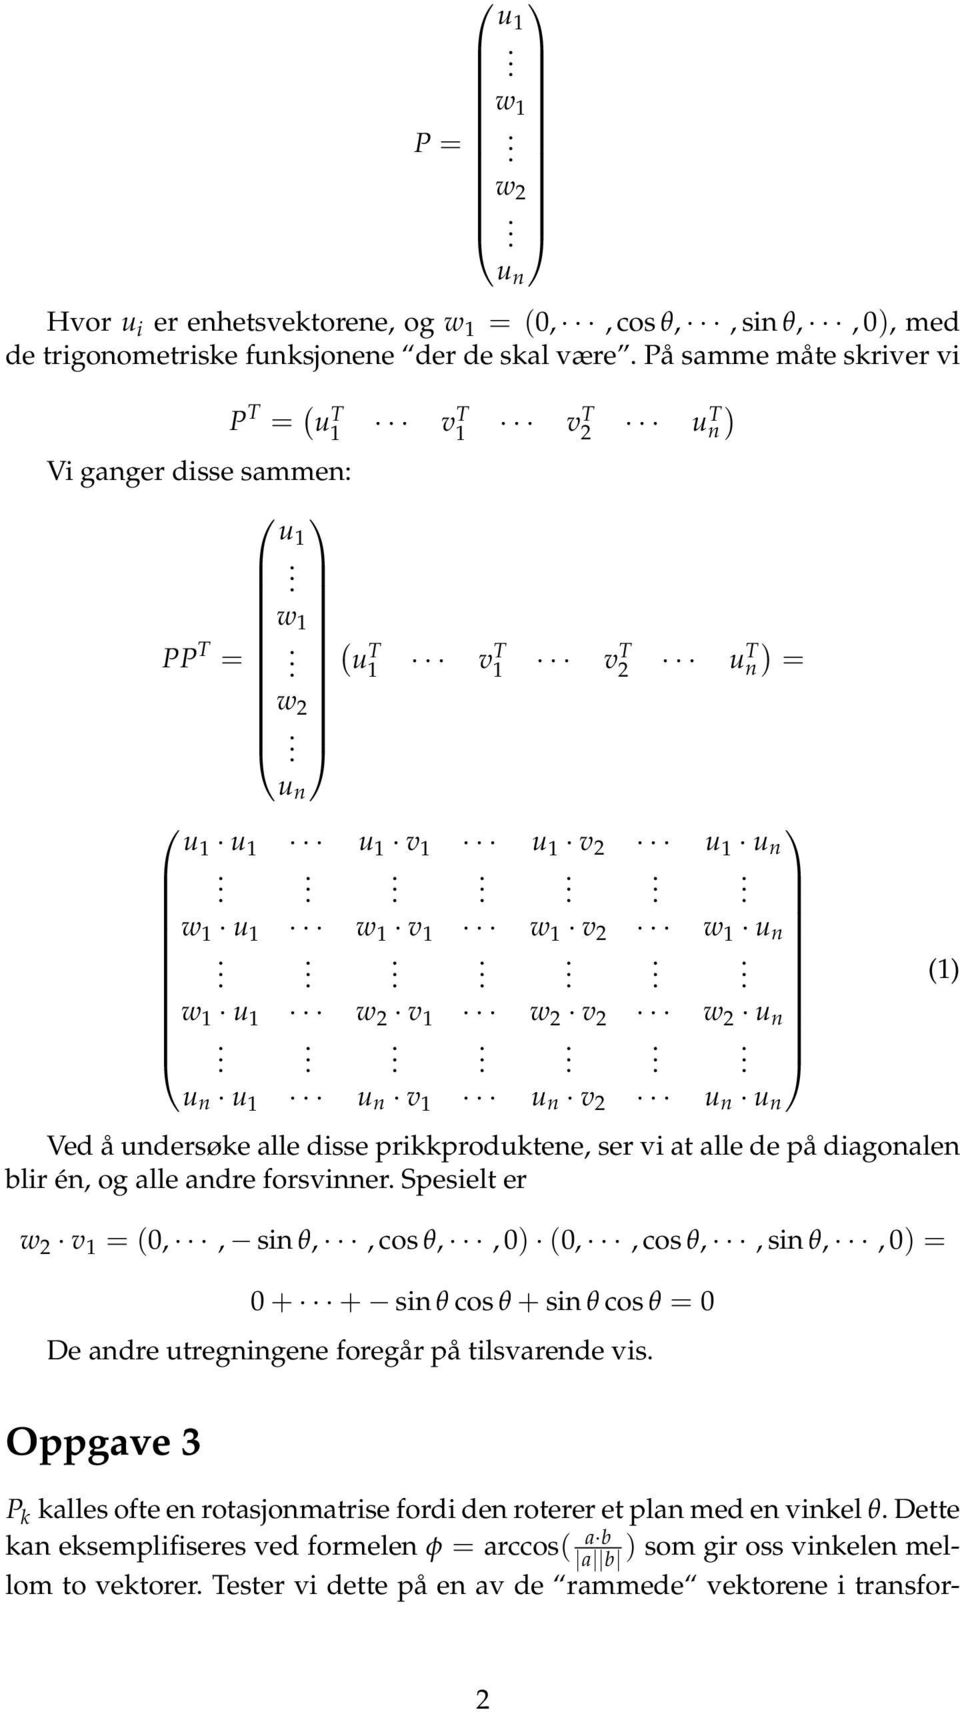 alle adre forsvier Spesielt er w 2 v = 0,, si θ,, cos θ,, 0) 0,, cos θ,, si θ,, 0) = 0+ + si θ cos θ+ si θ cos θ = 0 De adre utregigee foregår på tilsvarede vis ) Oppgave 3 P alles ofte e